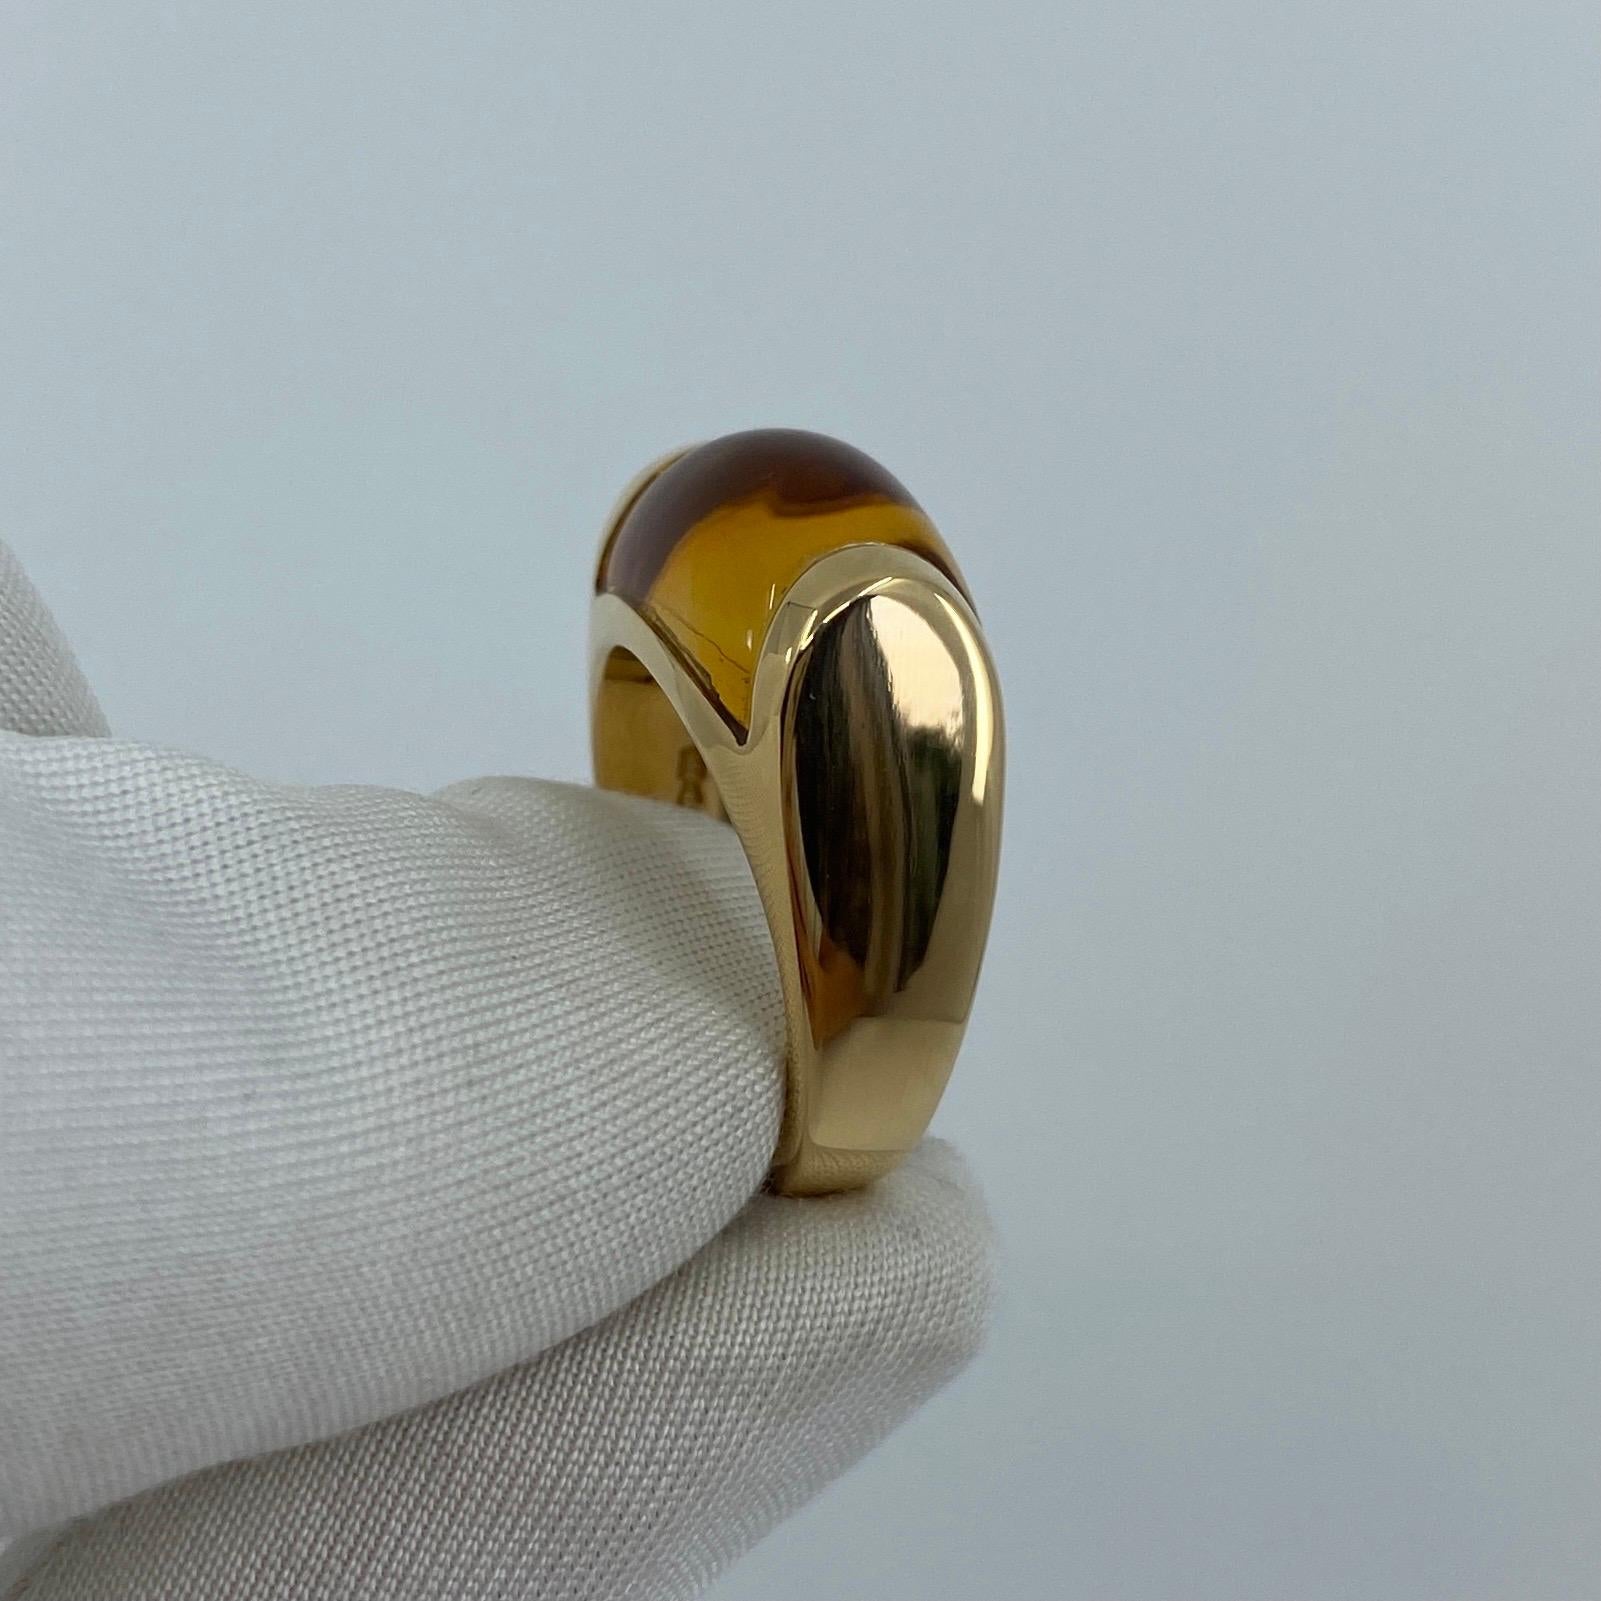 Bvlgari Bulgari Tronchetto 18 Karat Yellow Gold Orange Citrine Ring with Box 2